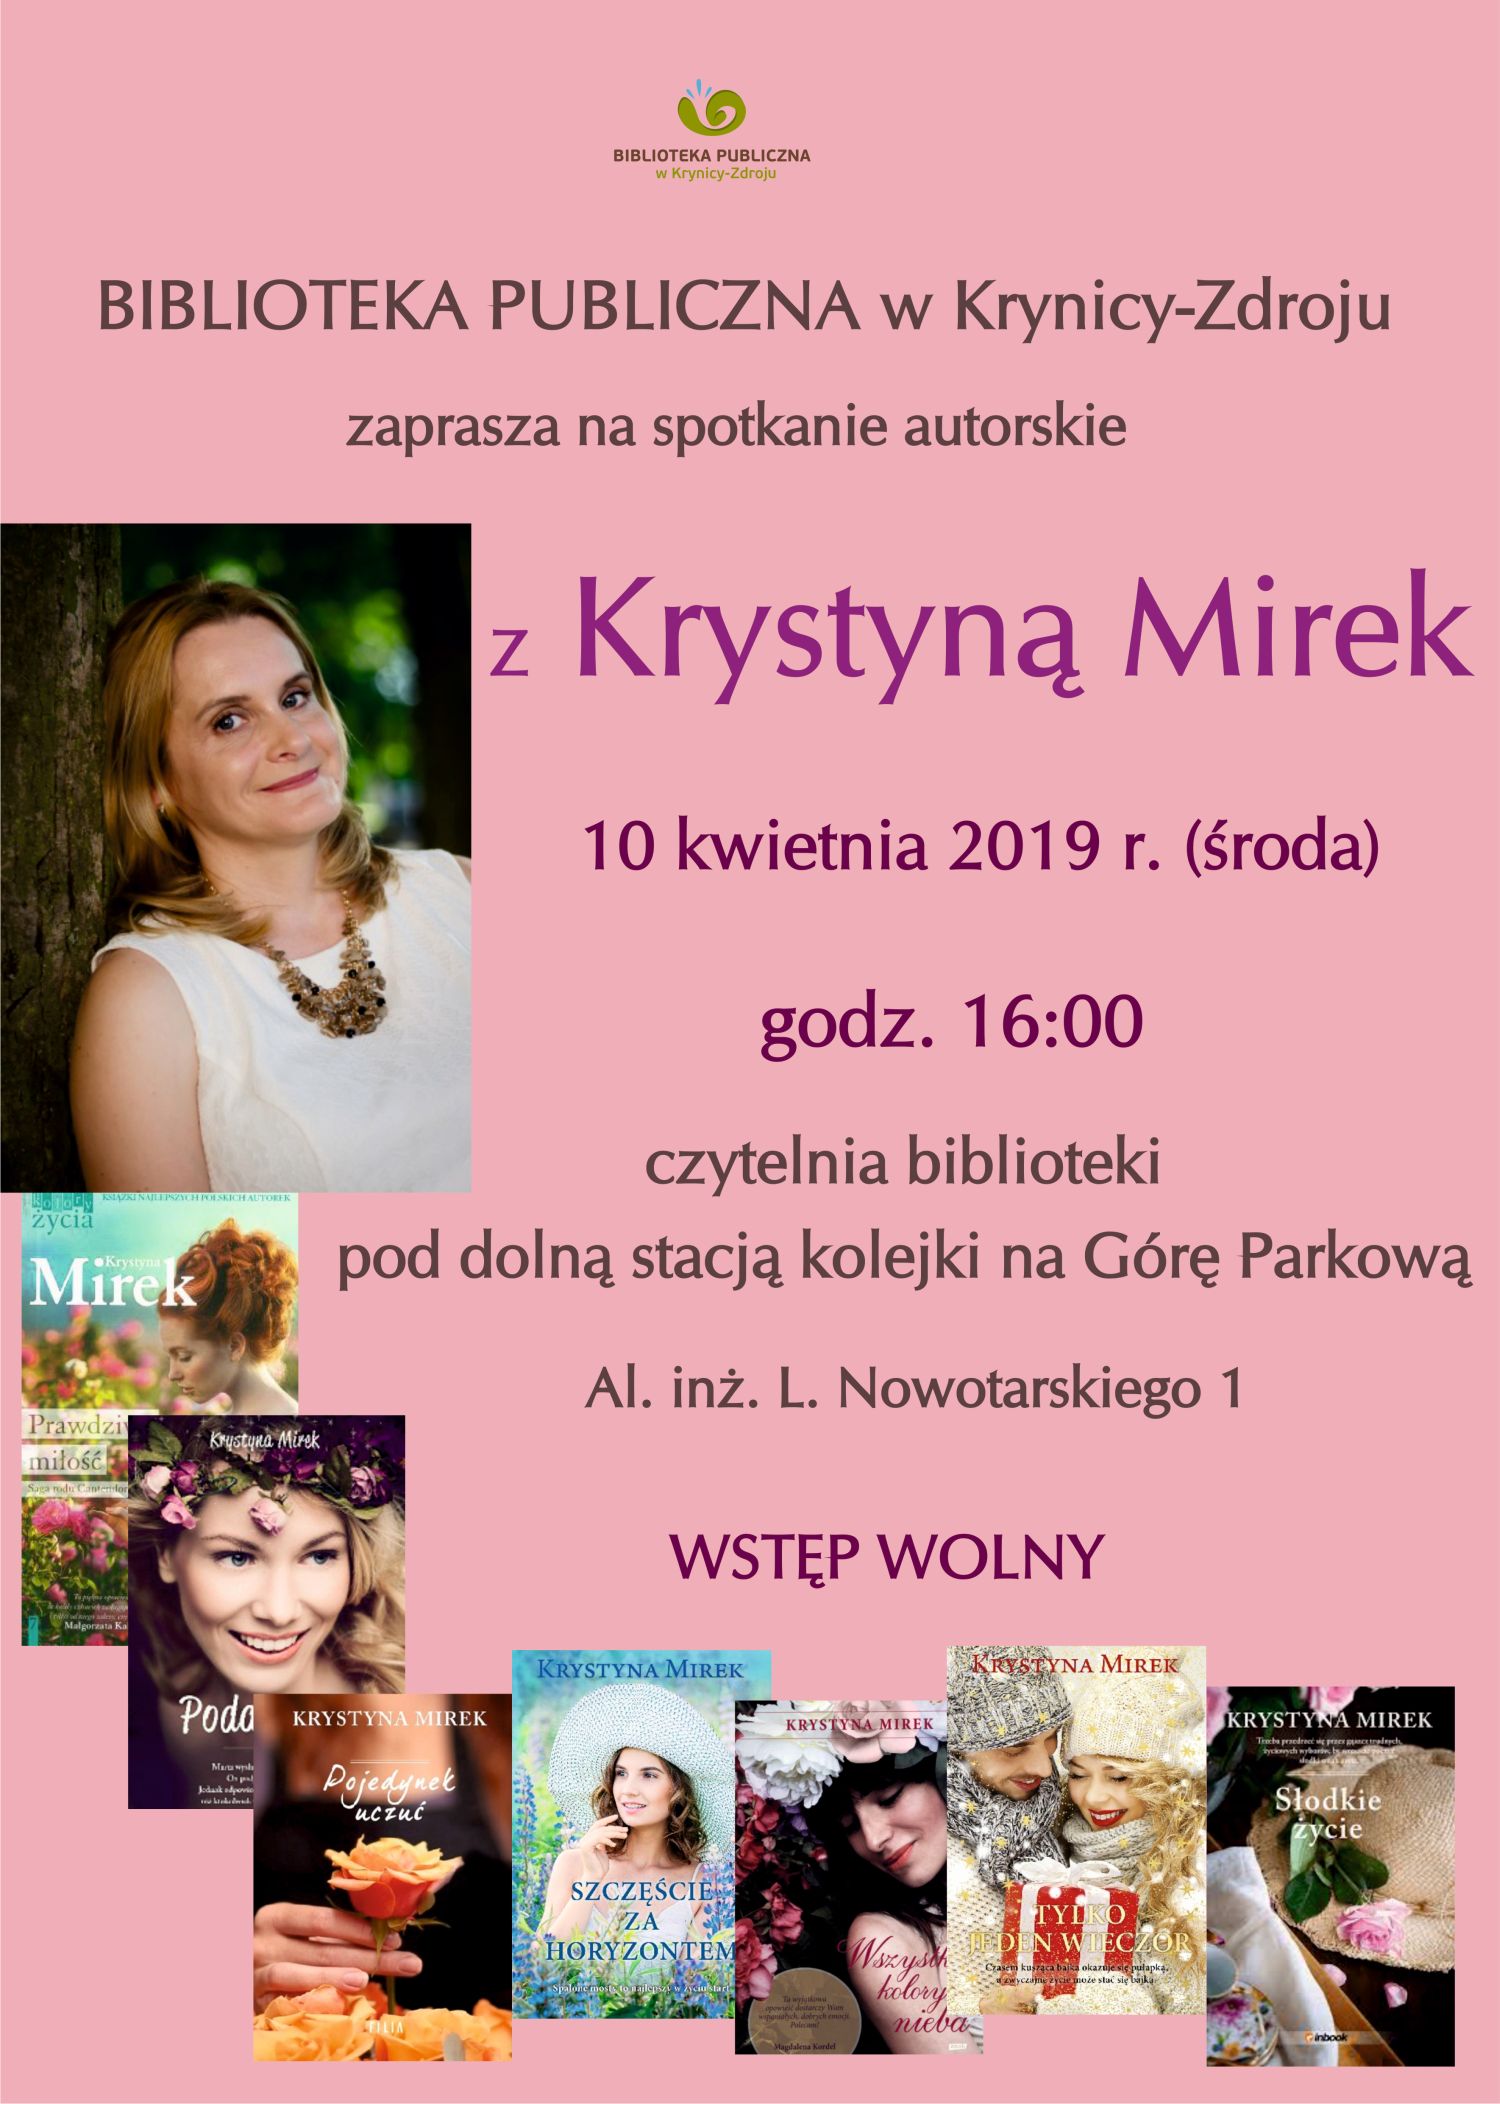 Spotkanie autorskie z Krystyną Mirek